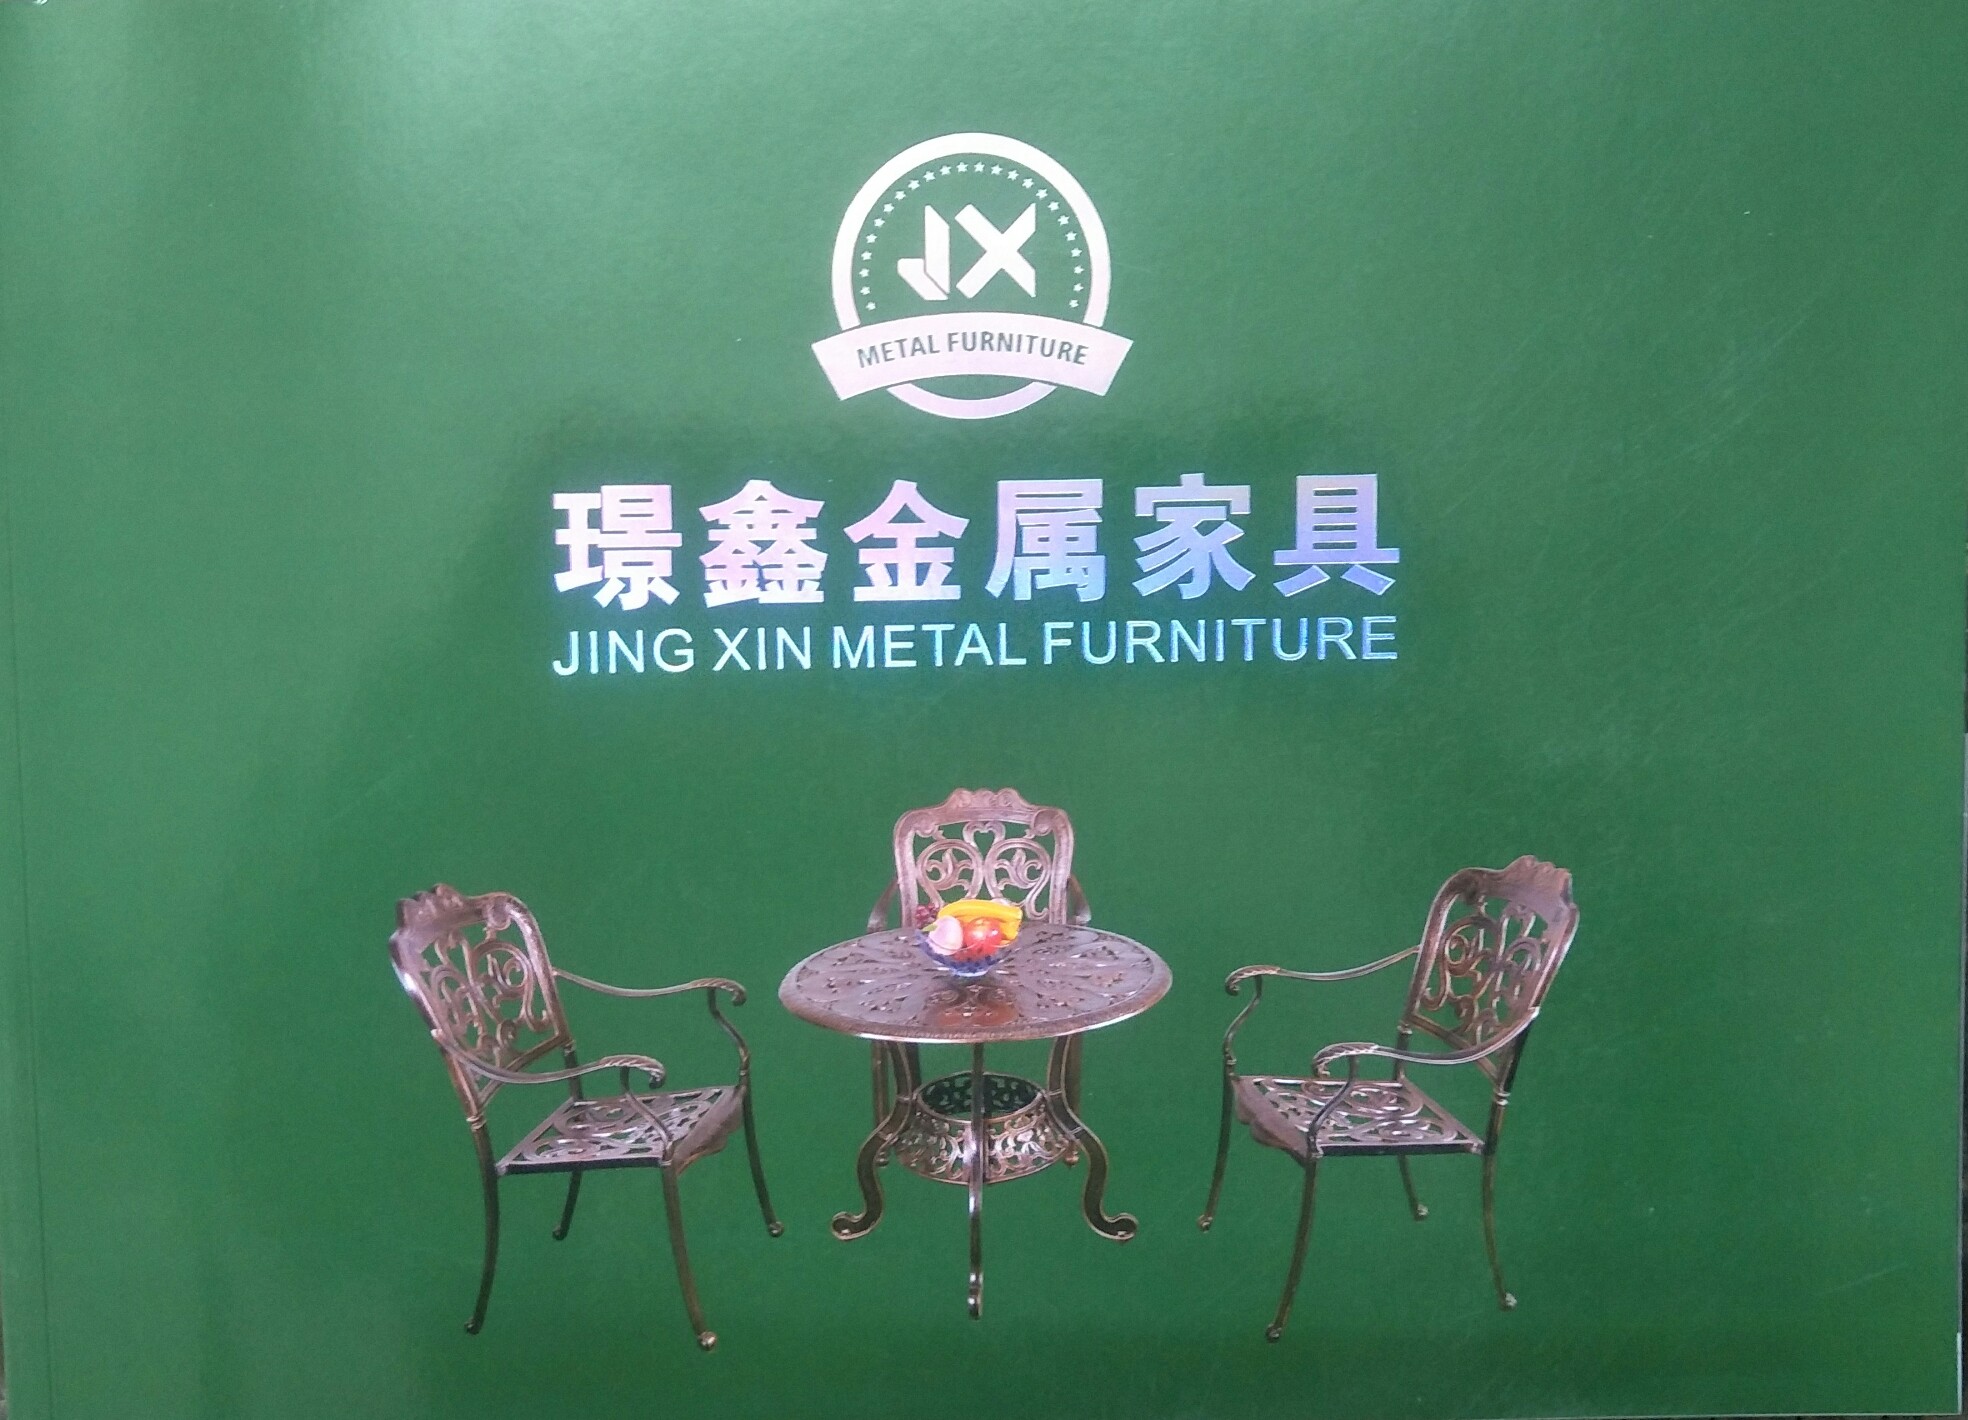 铸铝茶几休闲桌椅铸铝茶几休闲桌椅  户外铸铝家具厂家  户外家具生产定做